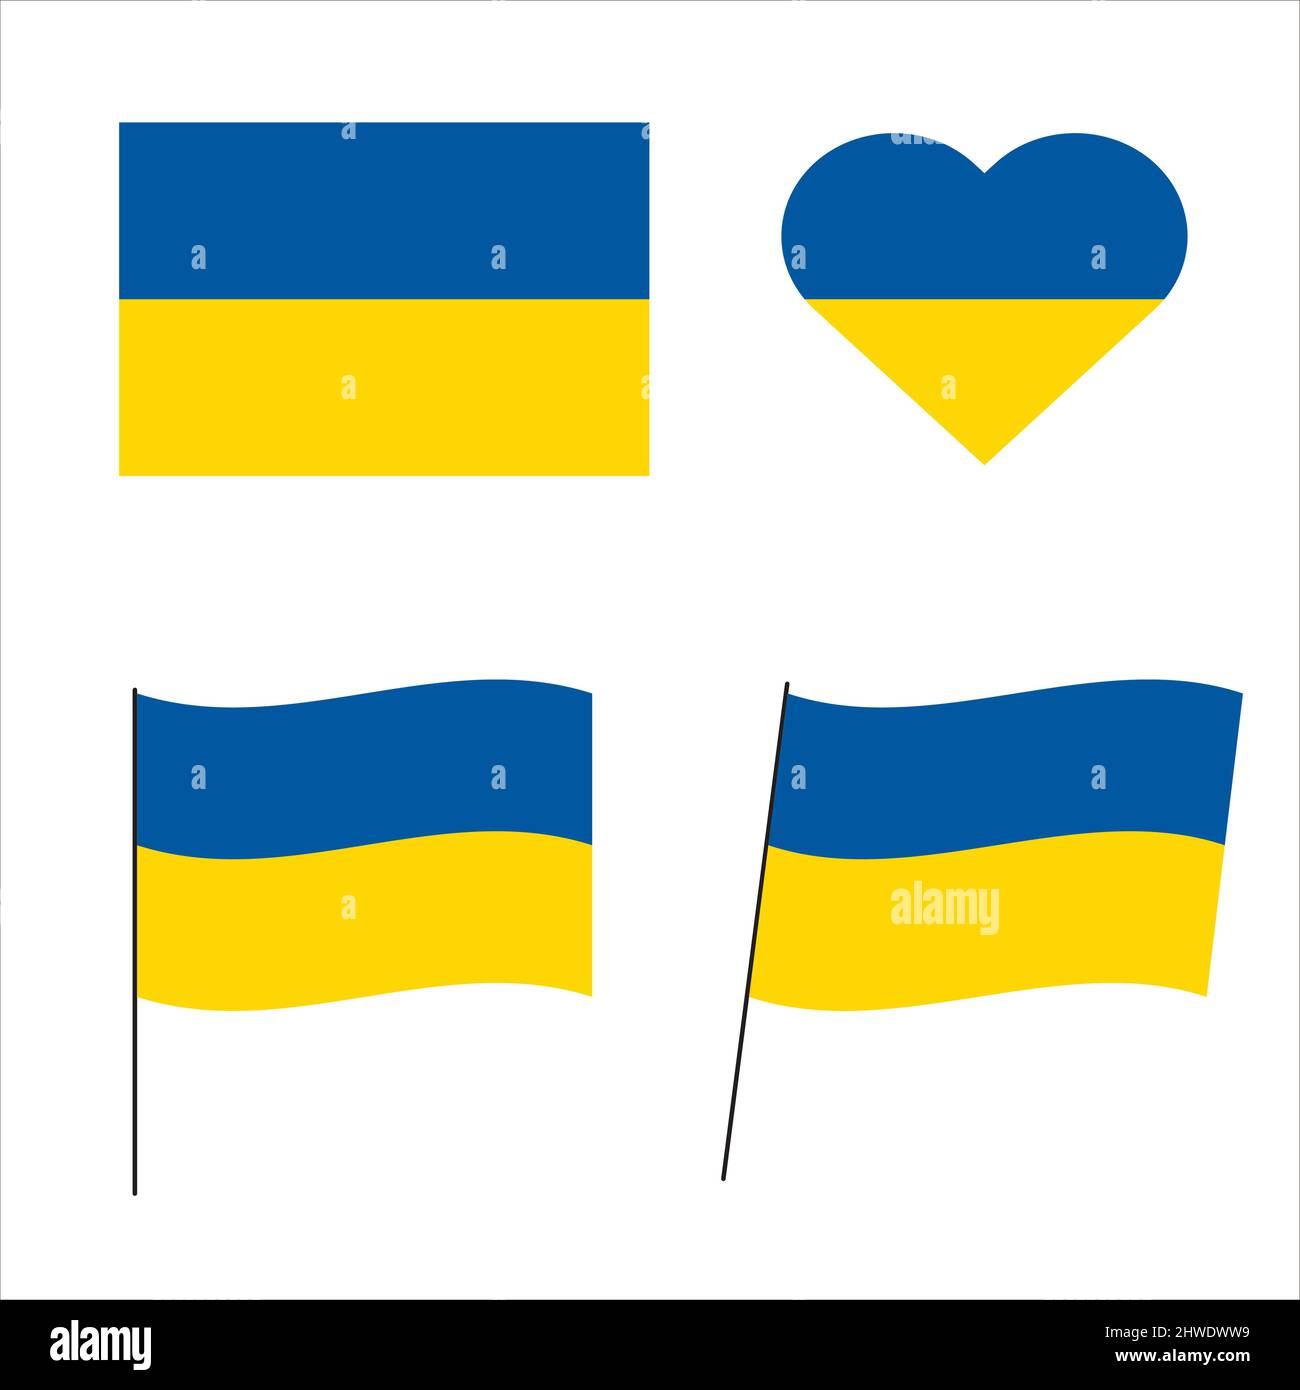 Ukrainische Flagge. Satz von Vektorbildern der Nationalflagge der Ukraine. Ukrainisches Flaggensymbol. Blau und gelb. Stock Vektor